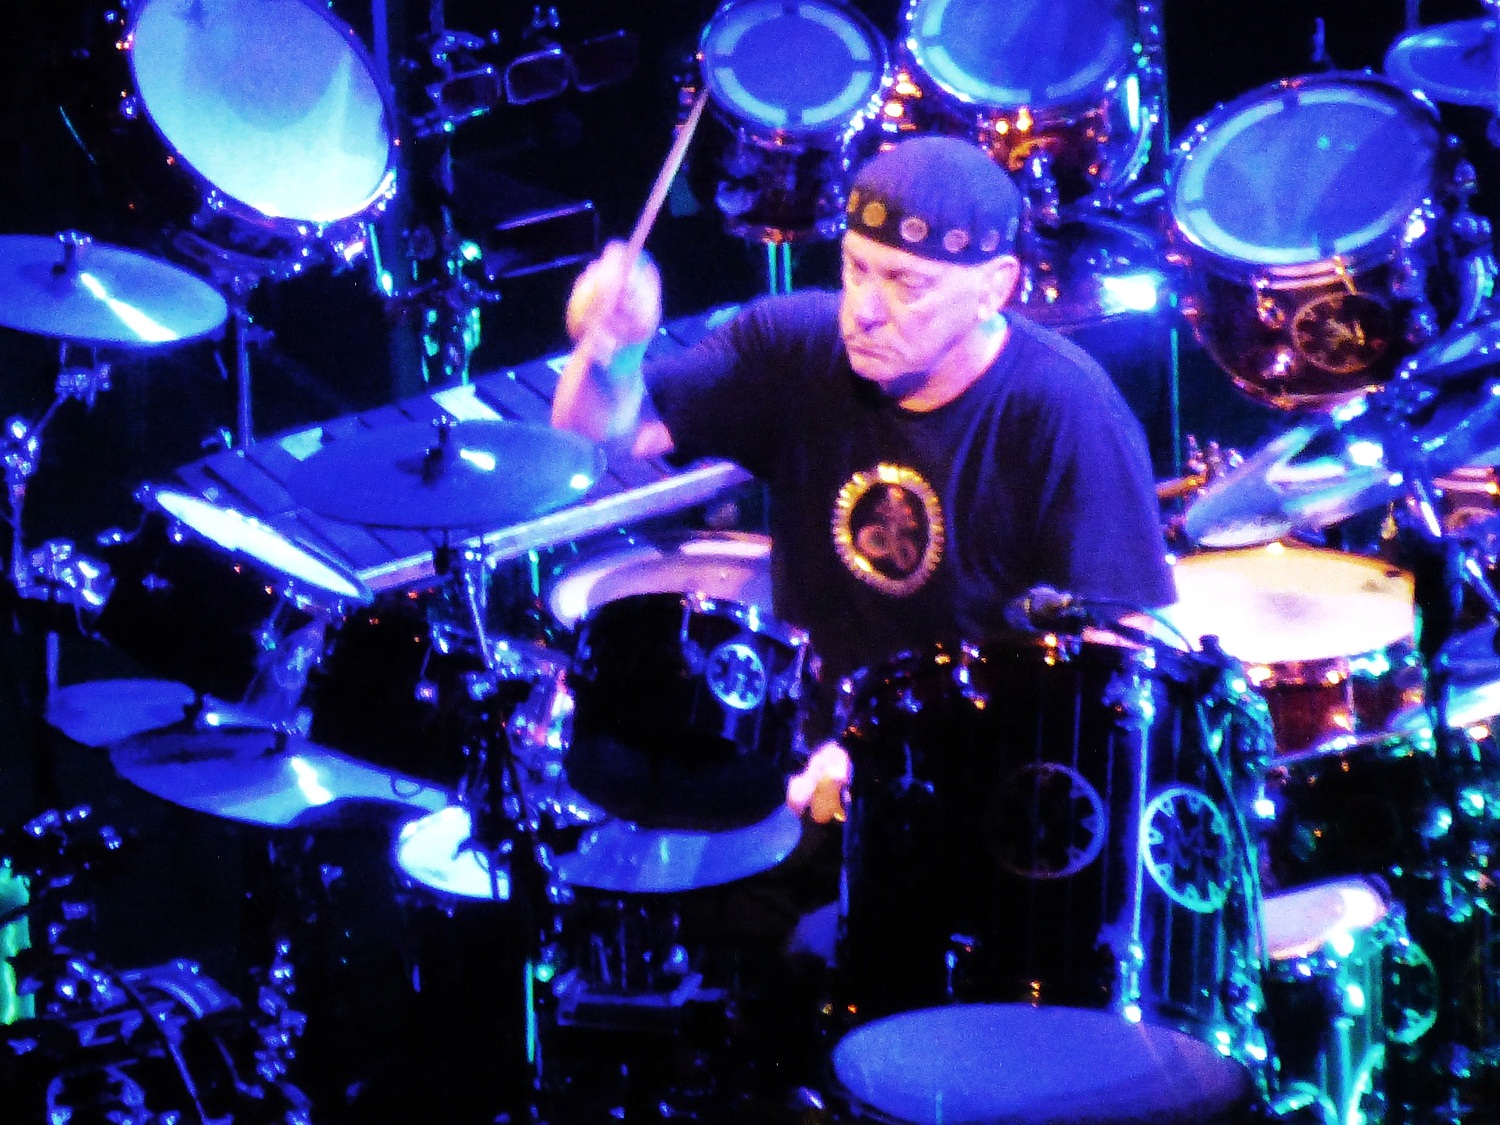 rush drummer